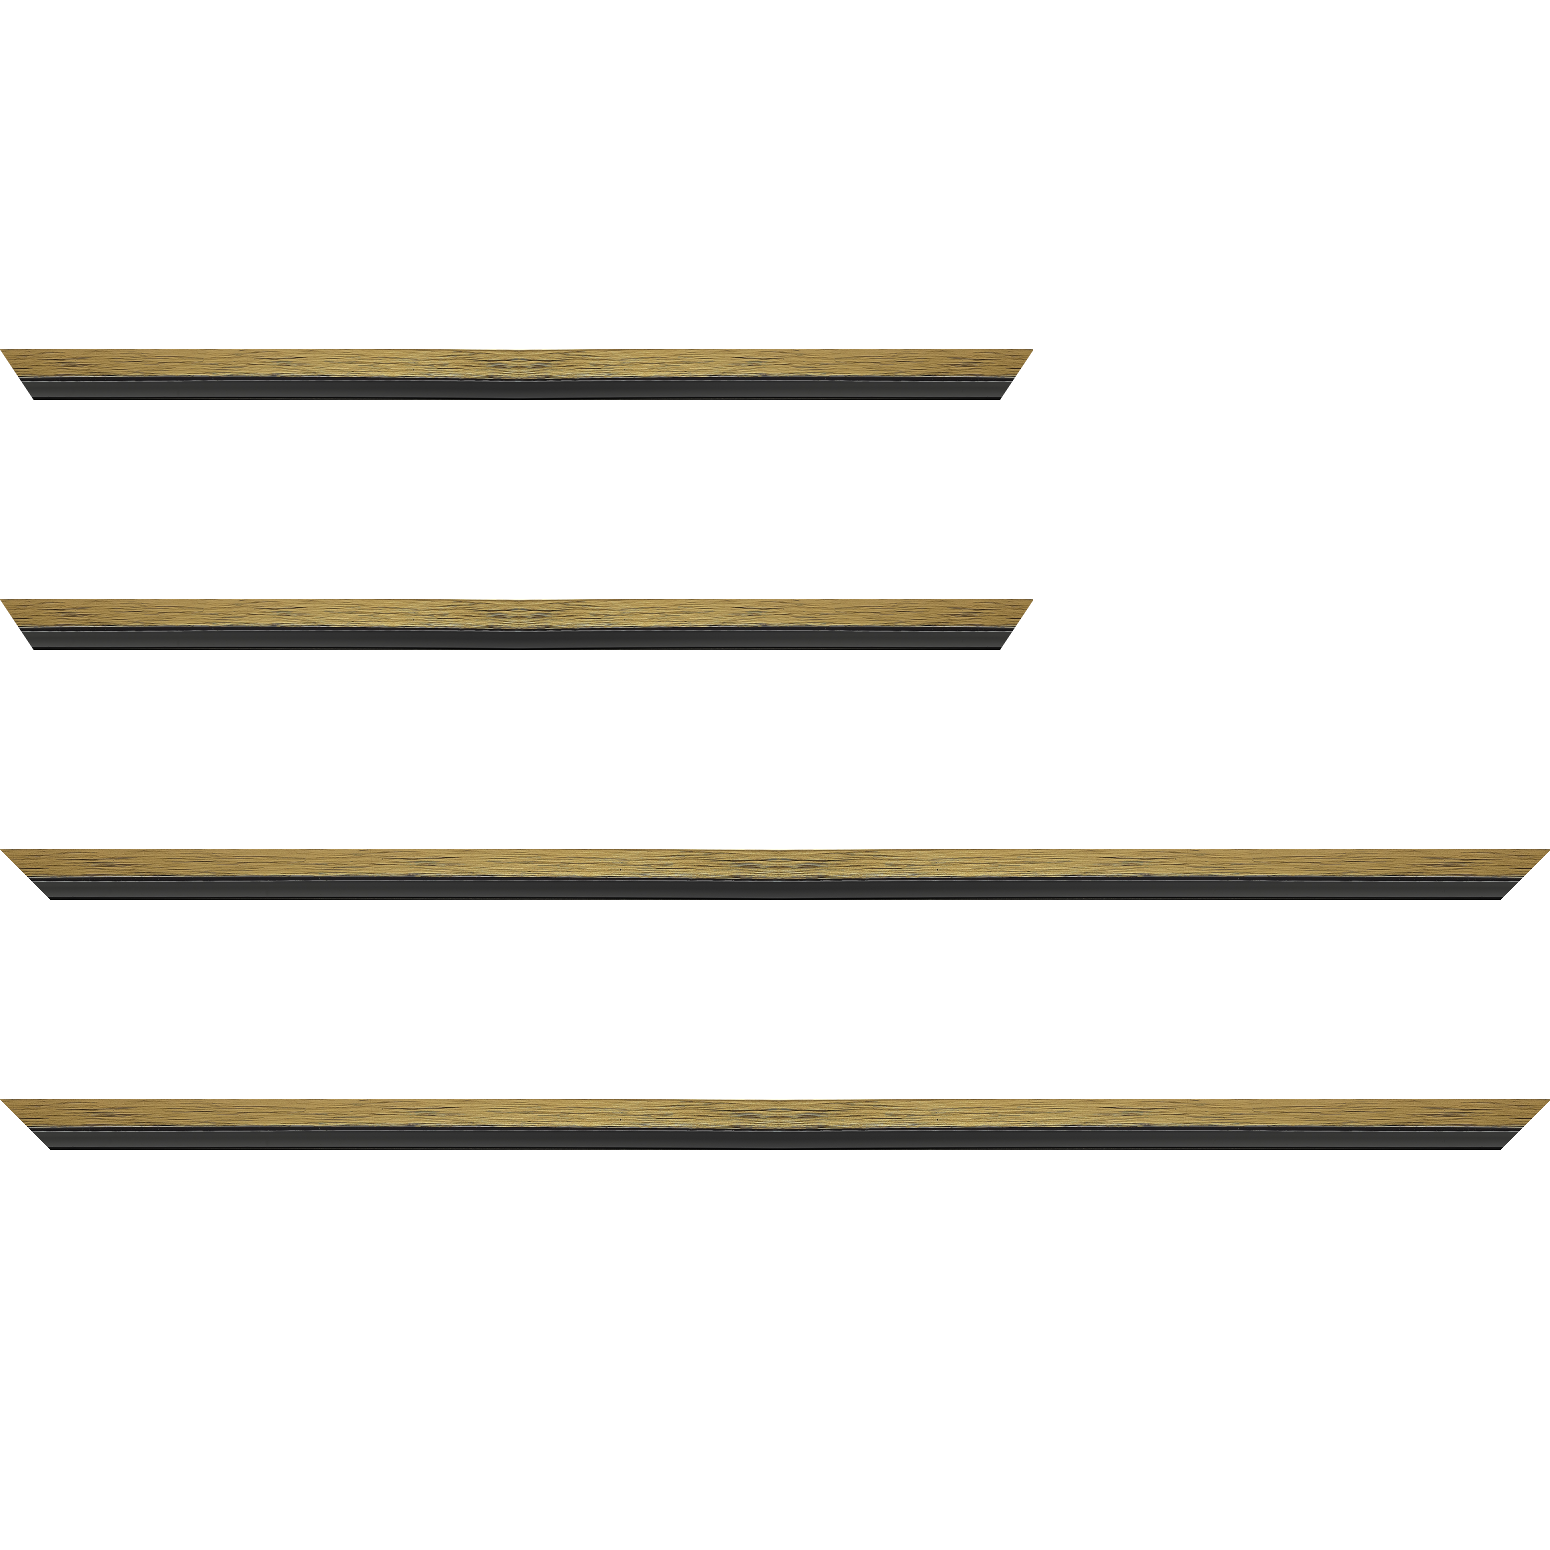 Baguette bois profil plat largeur 1.6cm couleur or contemporain filet noir en retrait de la face du cadre de 6mm assurant un effet très original - 25x25